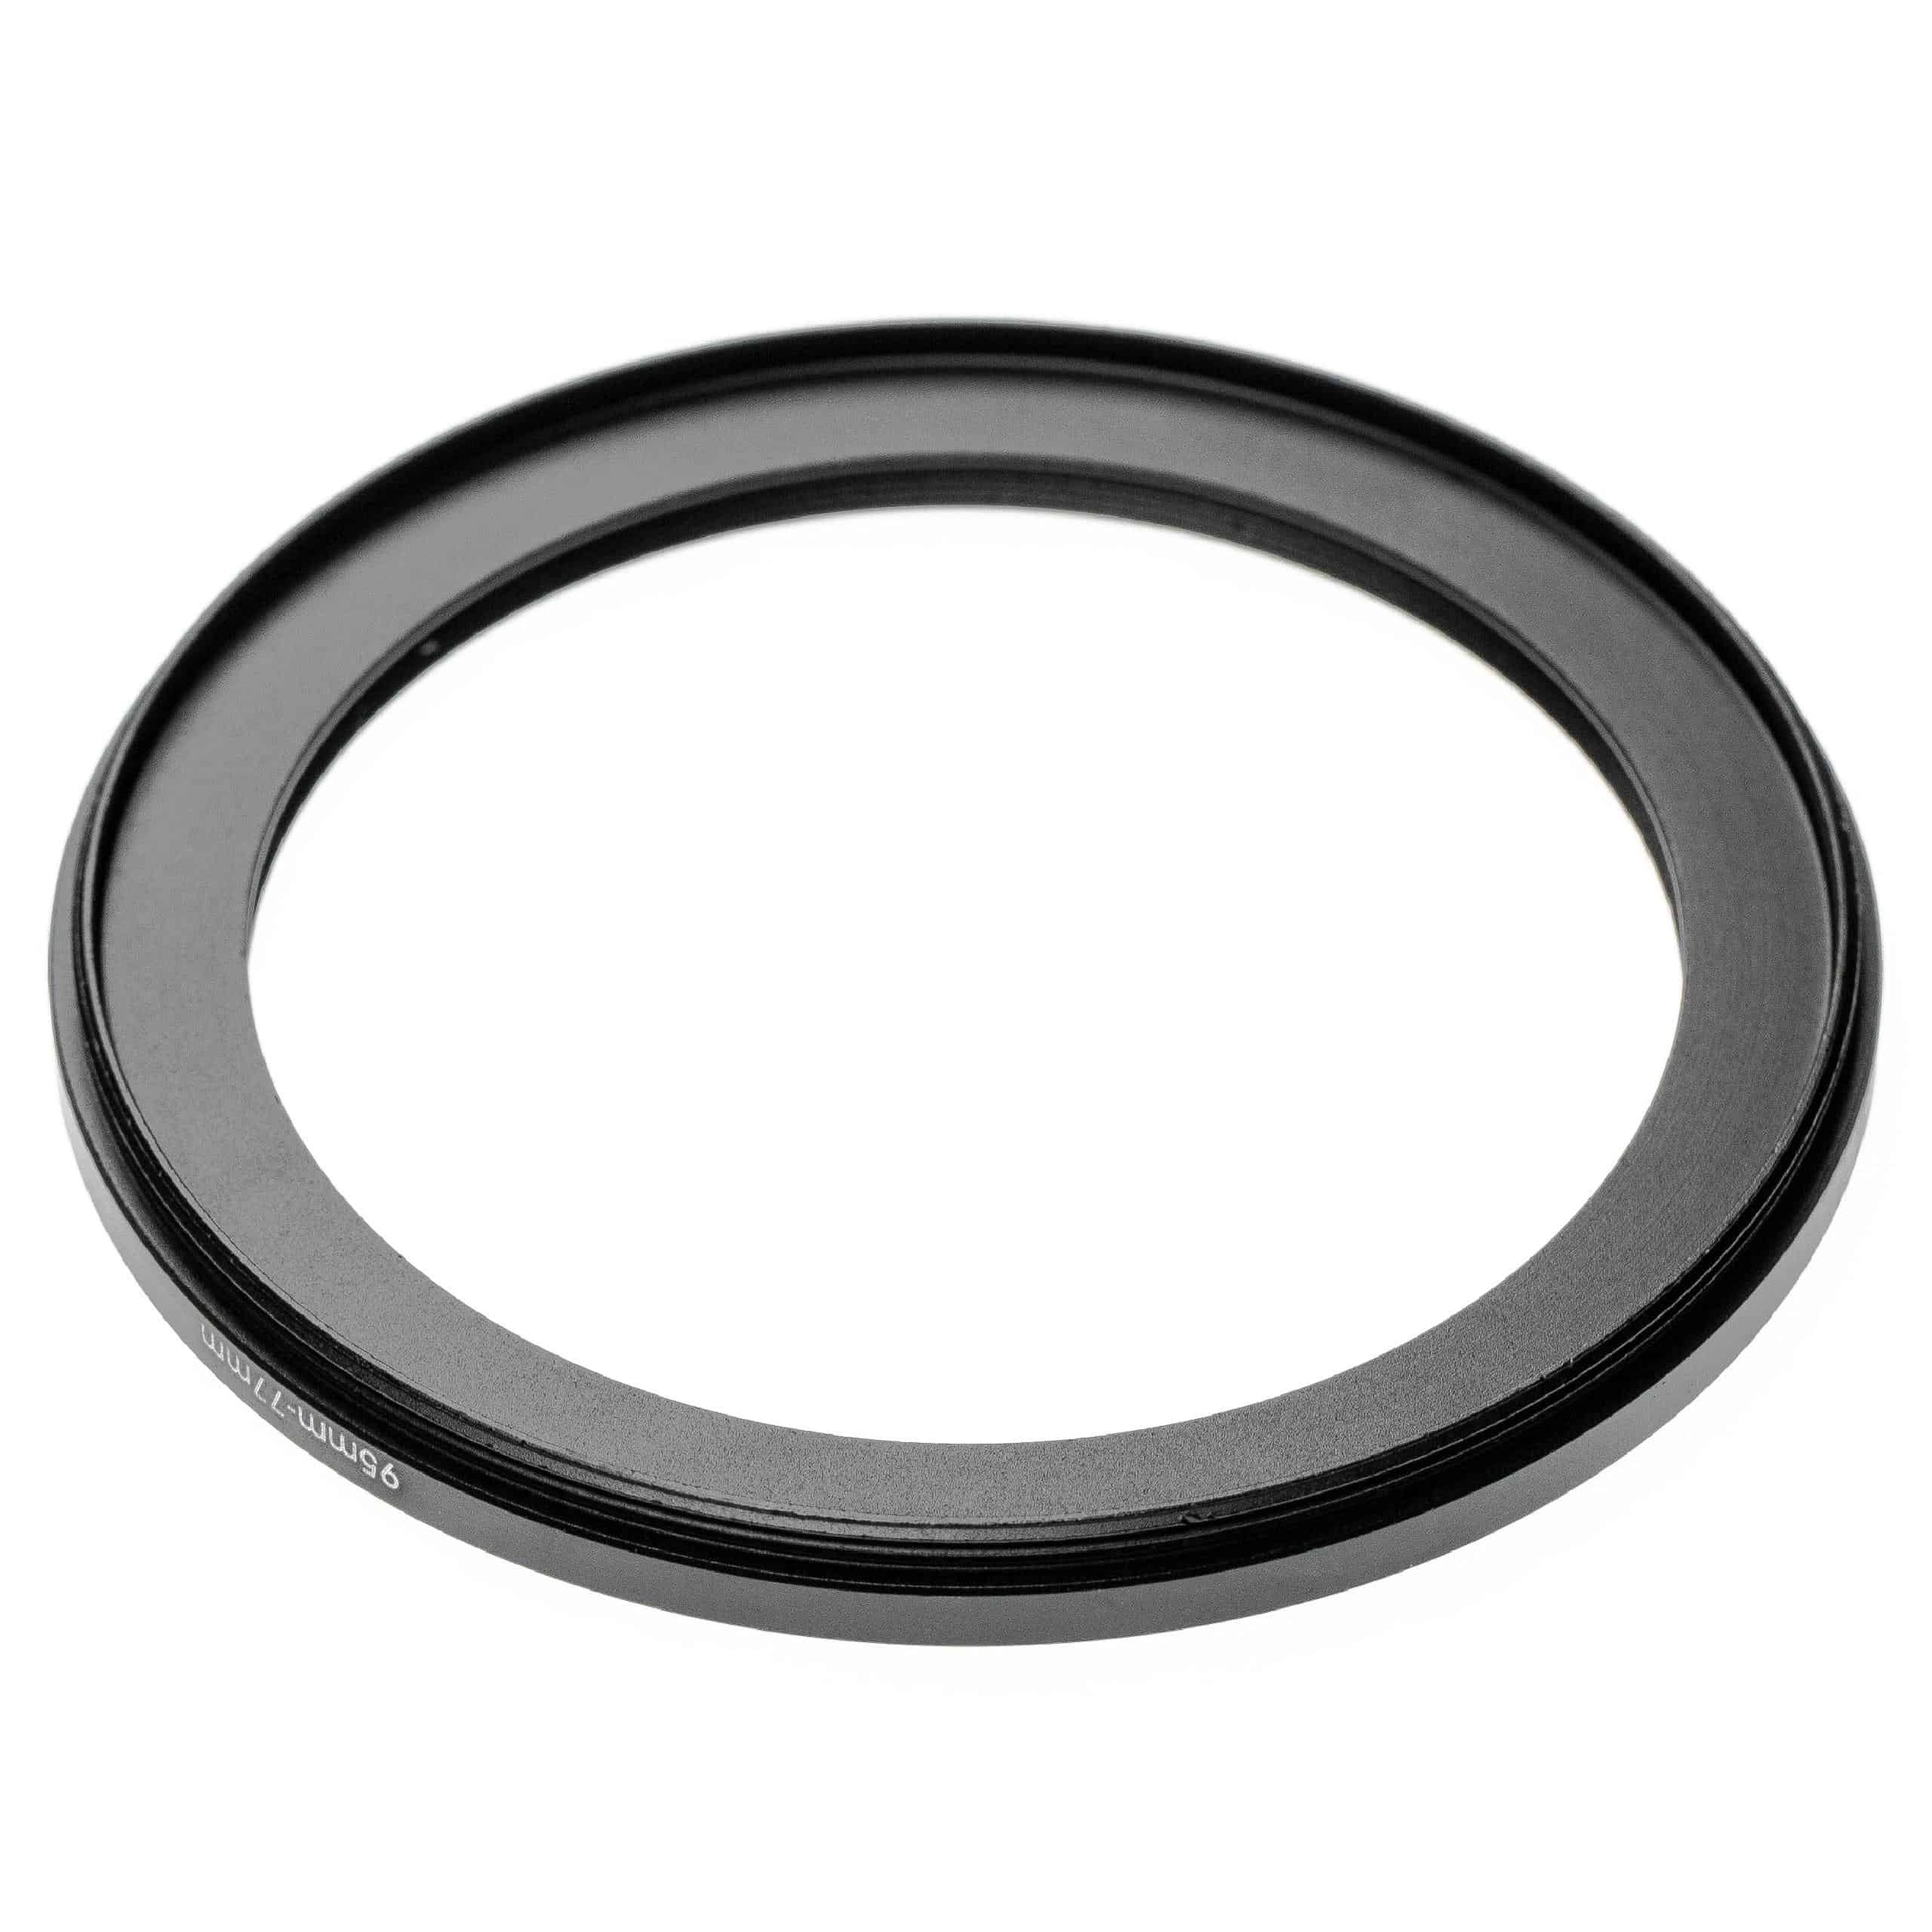 Anello adattatore step-down da 95 mm a 77 mm per obiettivo fotocamera - Adattatore filtro, alluminio (anodiz